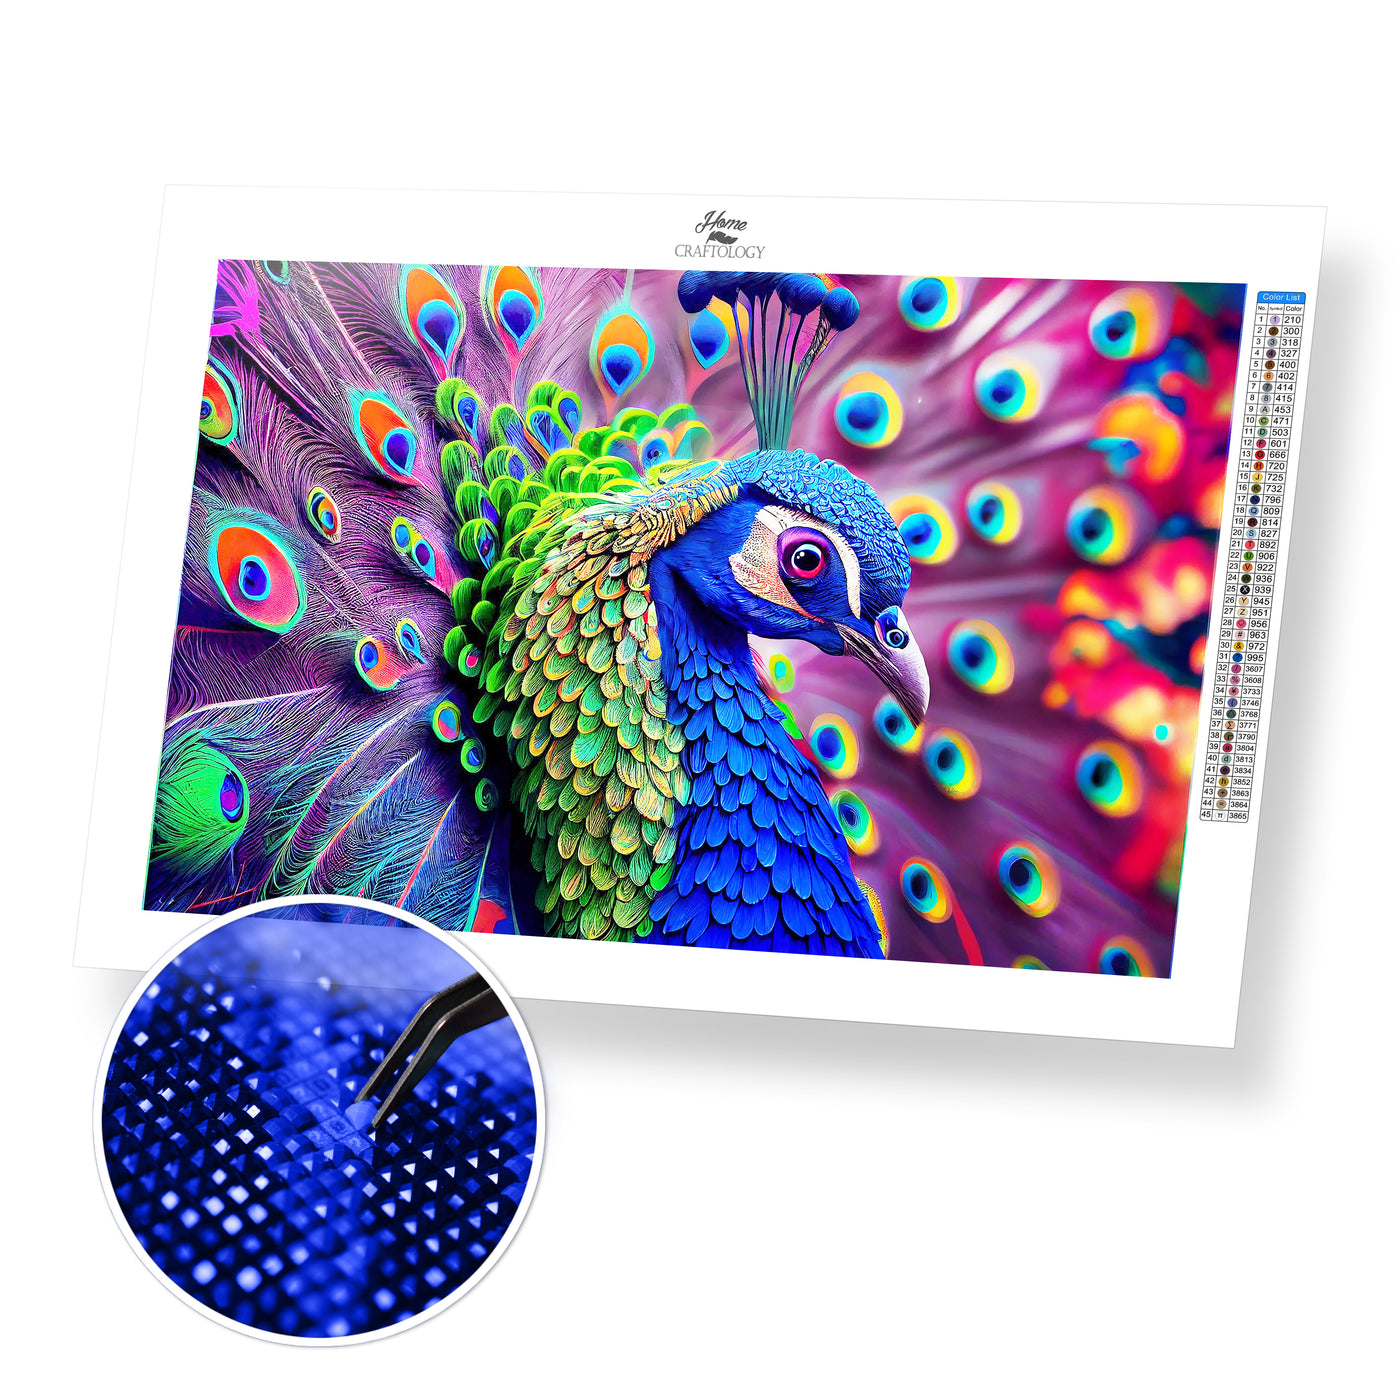 Peacock Close-up - Premium Diamond Painting Kit